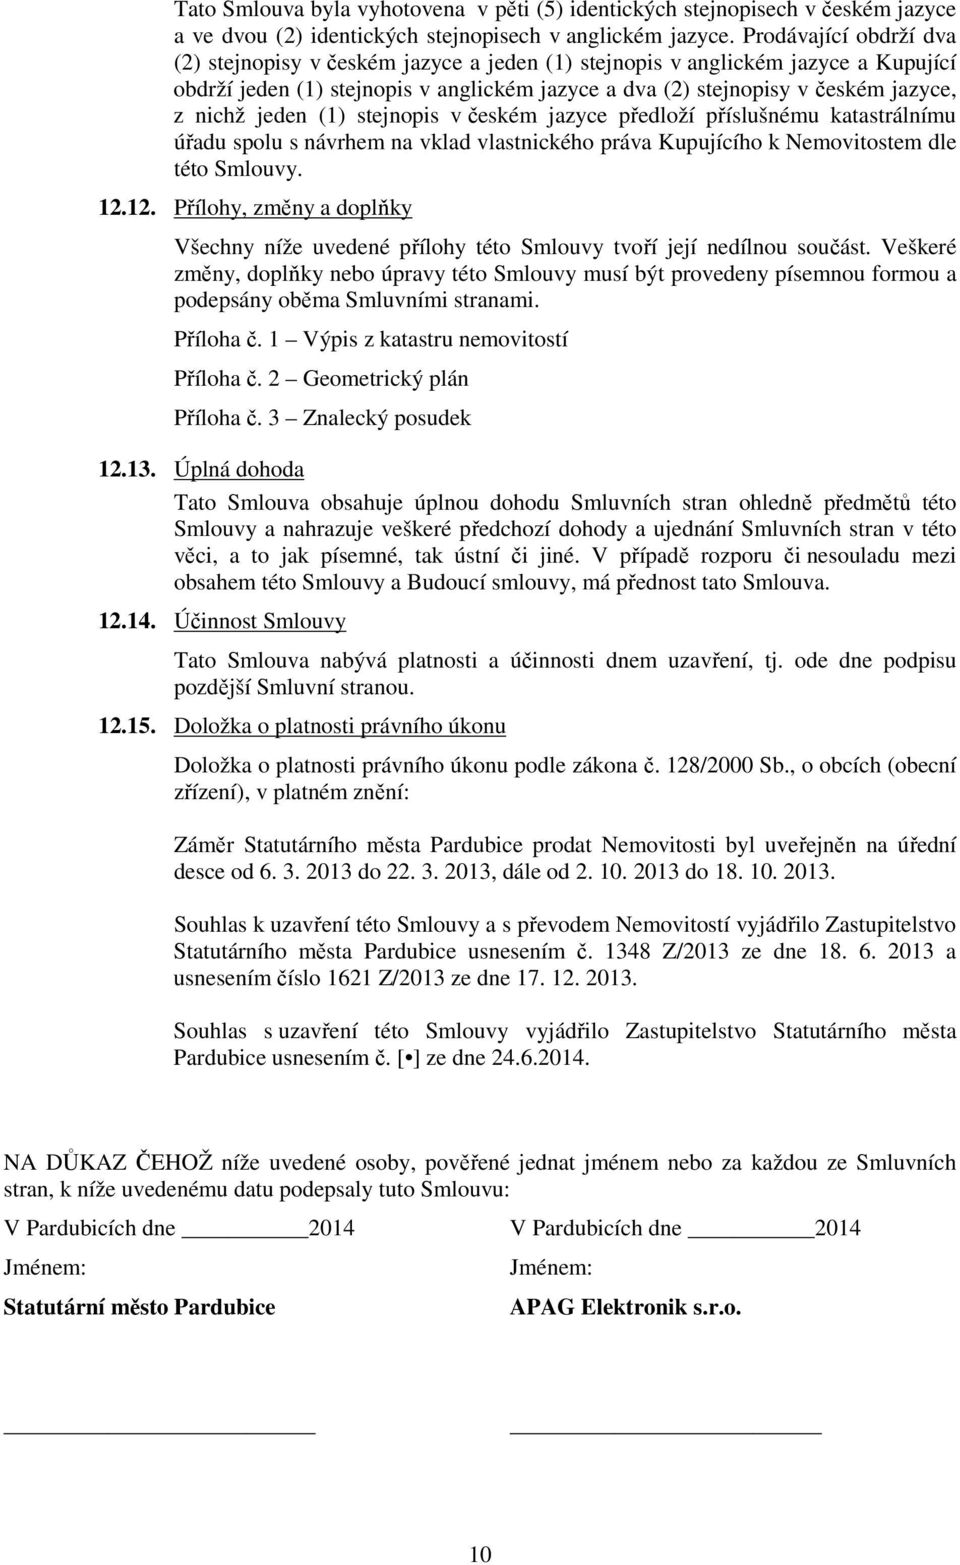 jeden (1) stejnopis v českém jazyce předloží příslušnému katastrálnímu úřadu spolu s návrhem na vklad vlastnického práva Kupujícího k Nemovitostem dle této Smlouvy. 12.